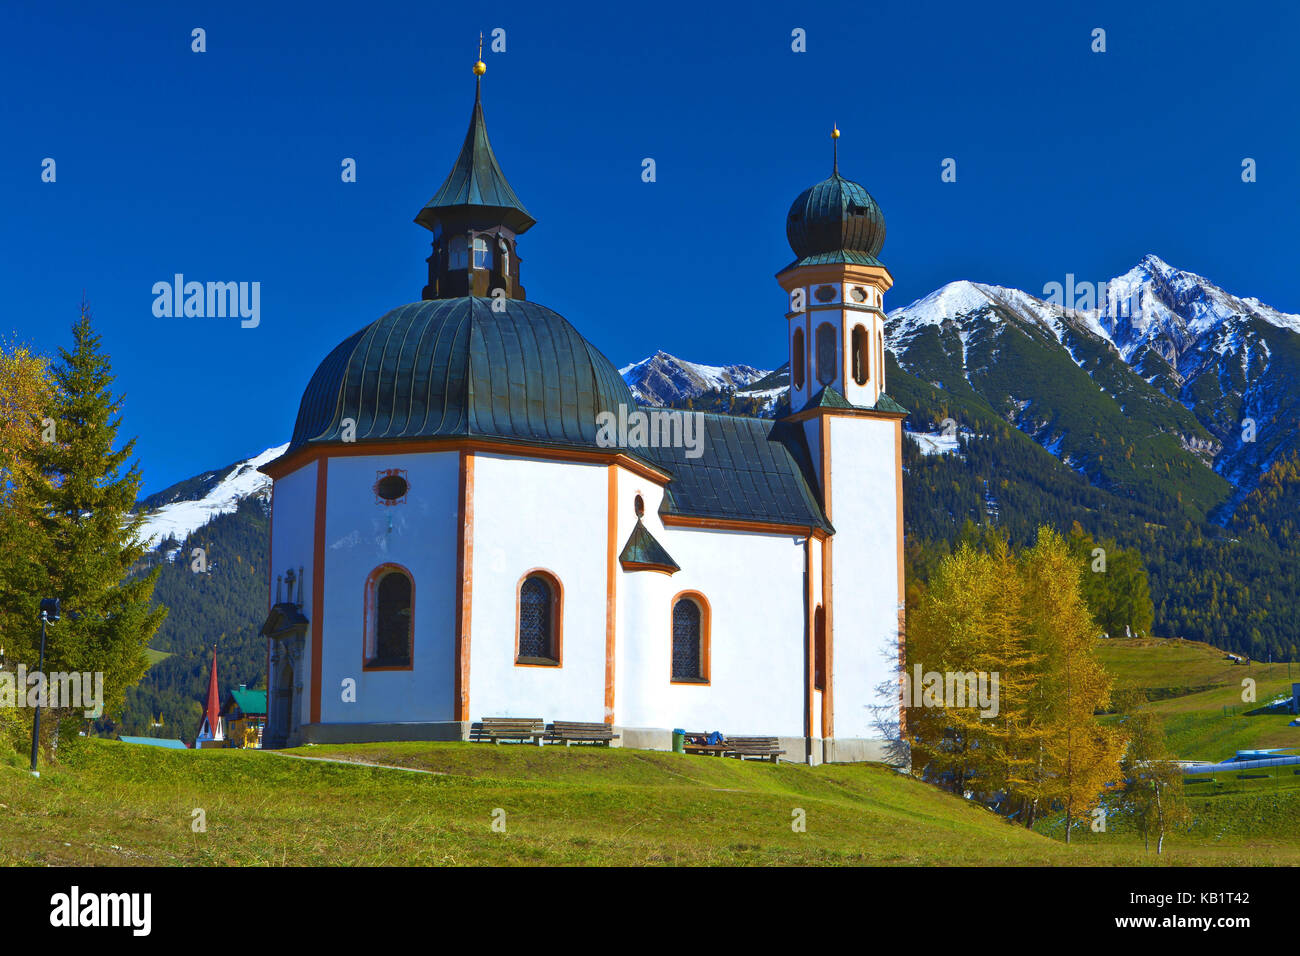 Austria, Tyrol, Seefeld, Seekirchl, Stock Photo